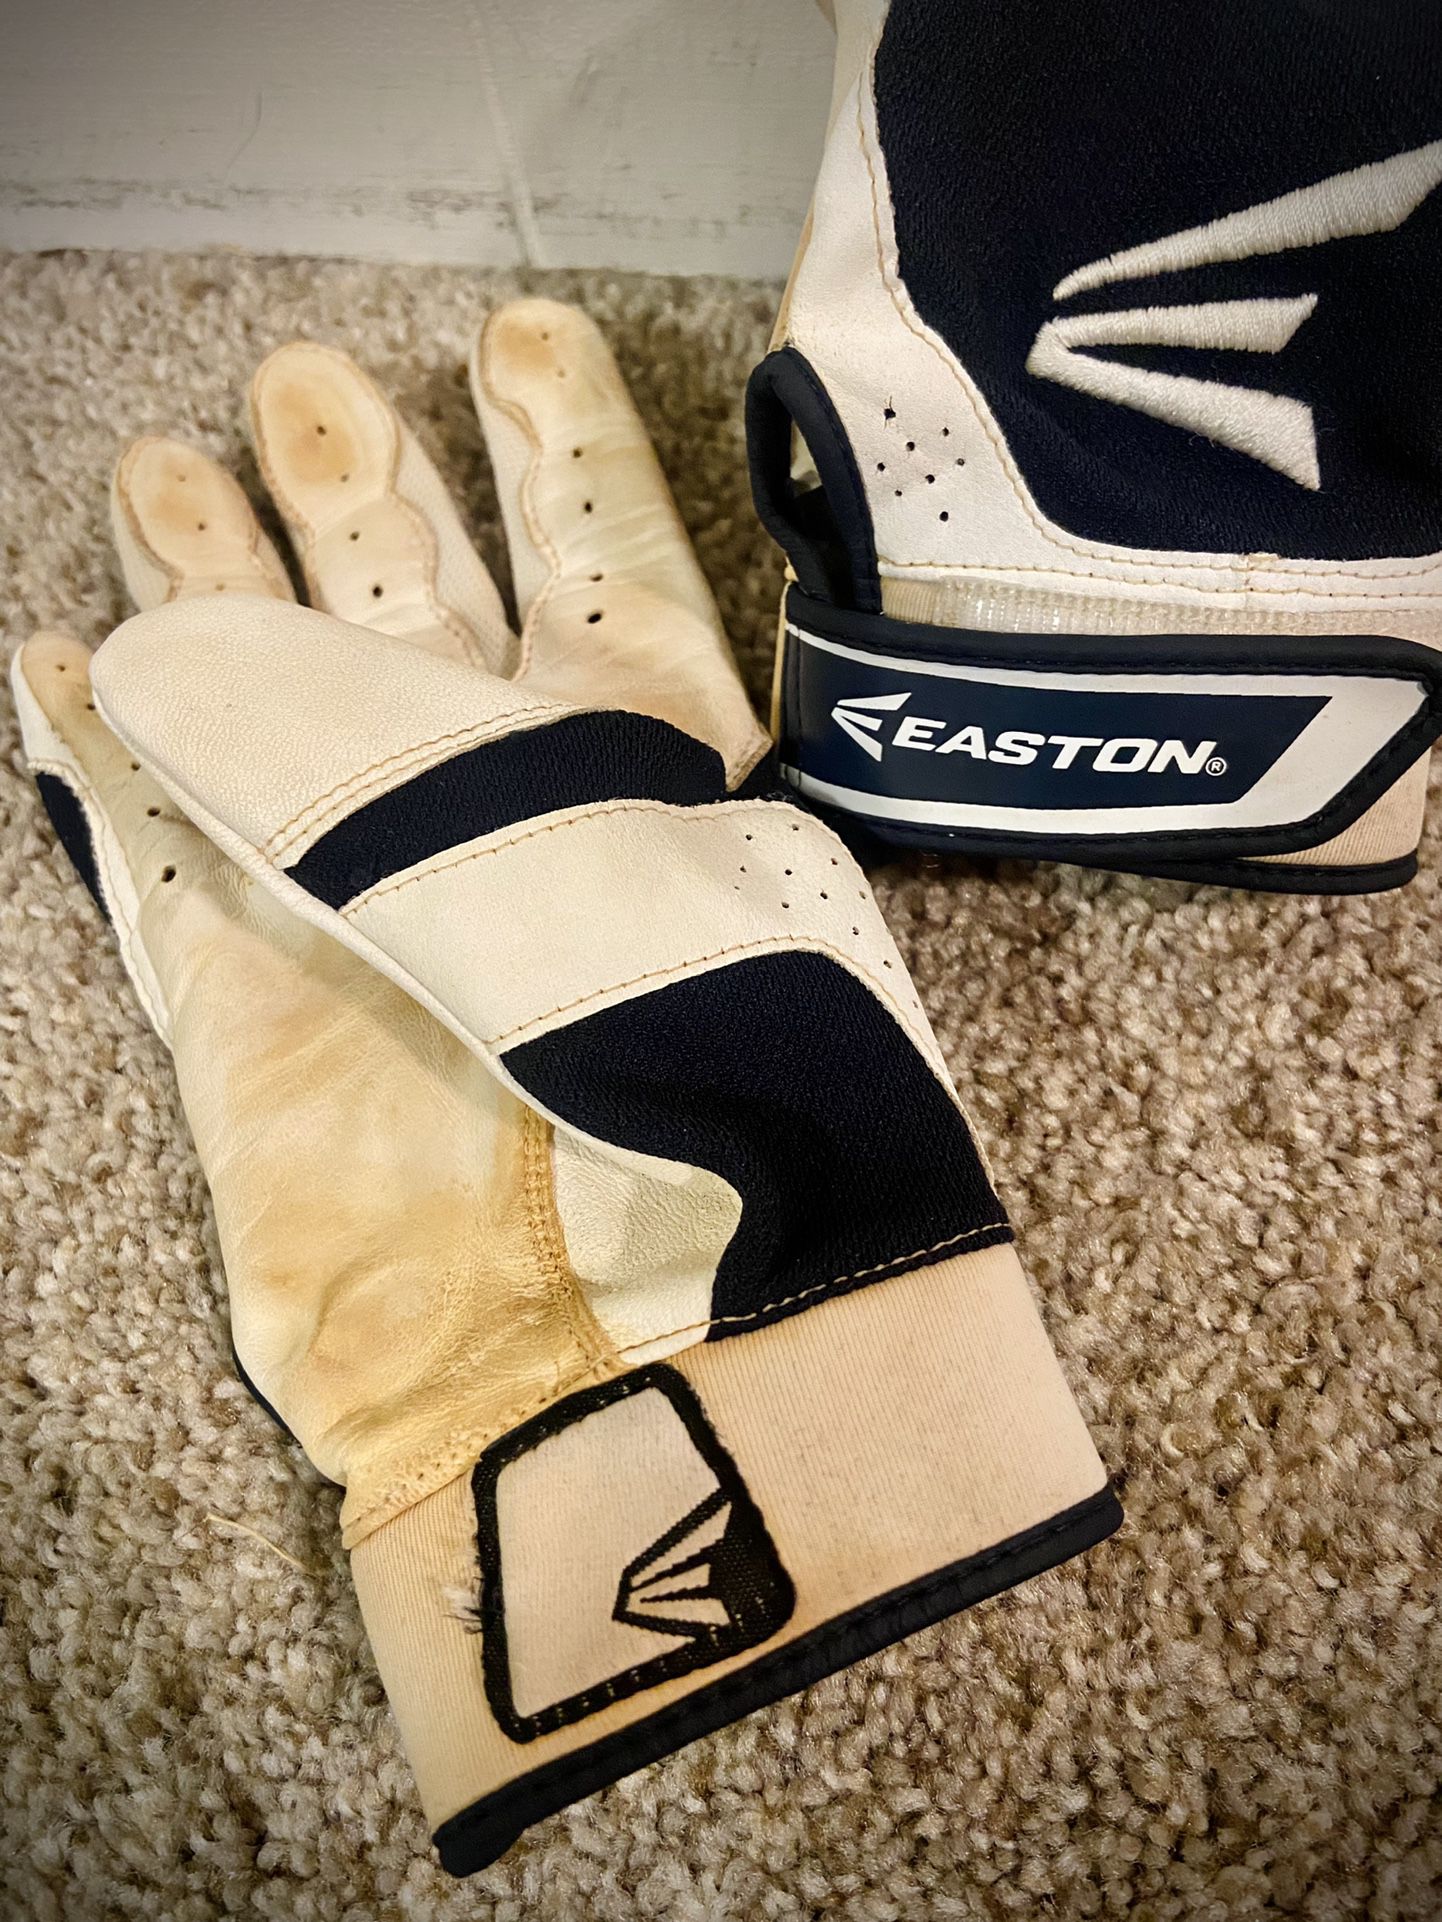 Easton Batting Gloves 